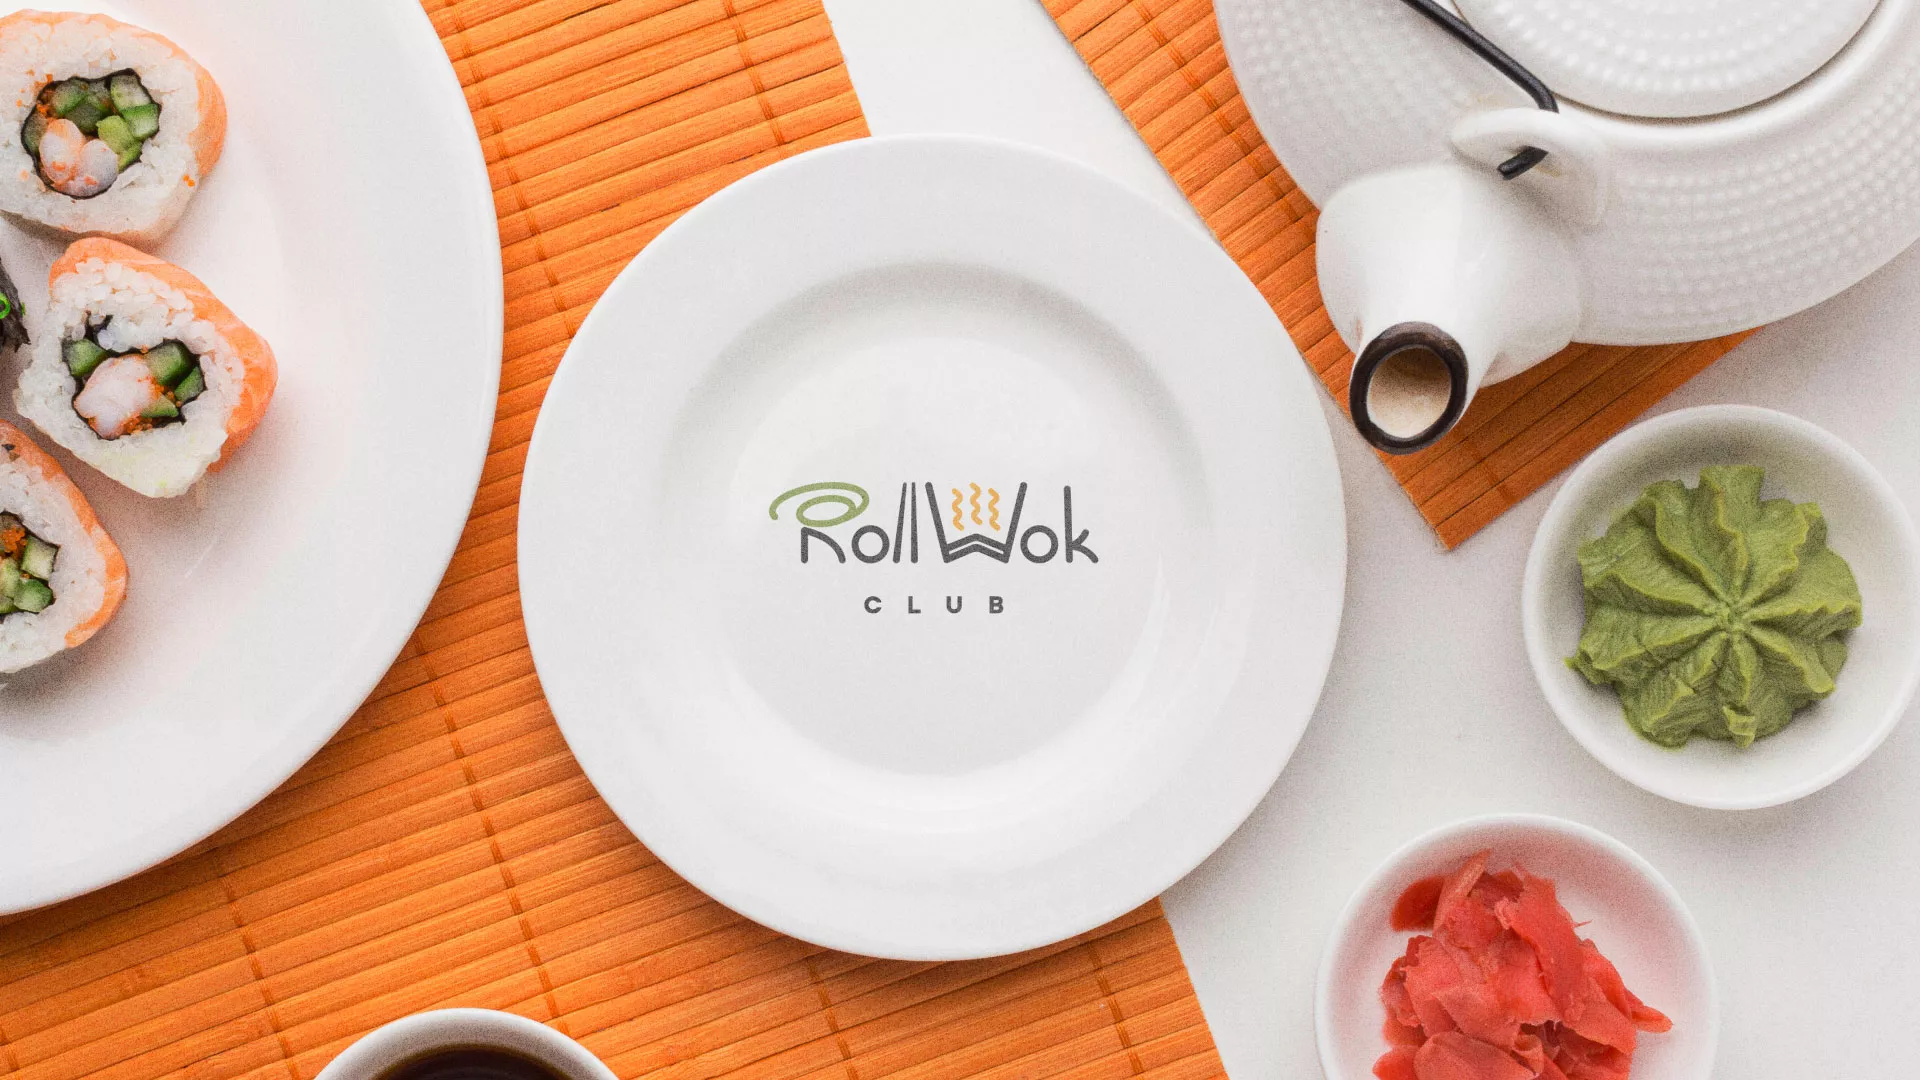 Разработка логотипа и фирменного стиля суши-бара «Roll Wok Club» в Долгопрудном